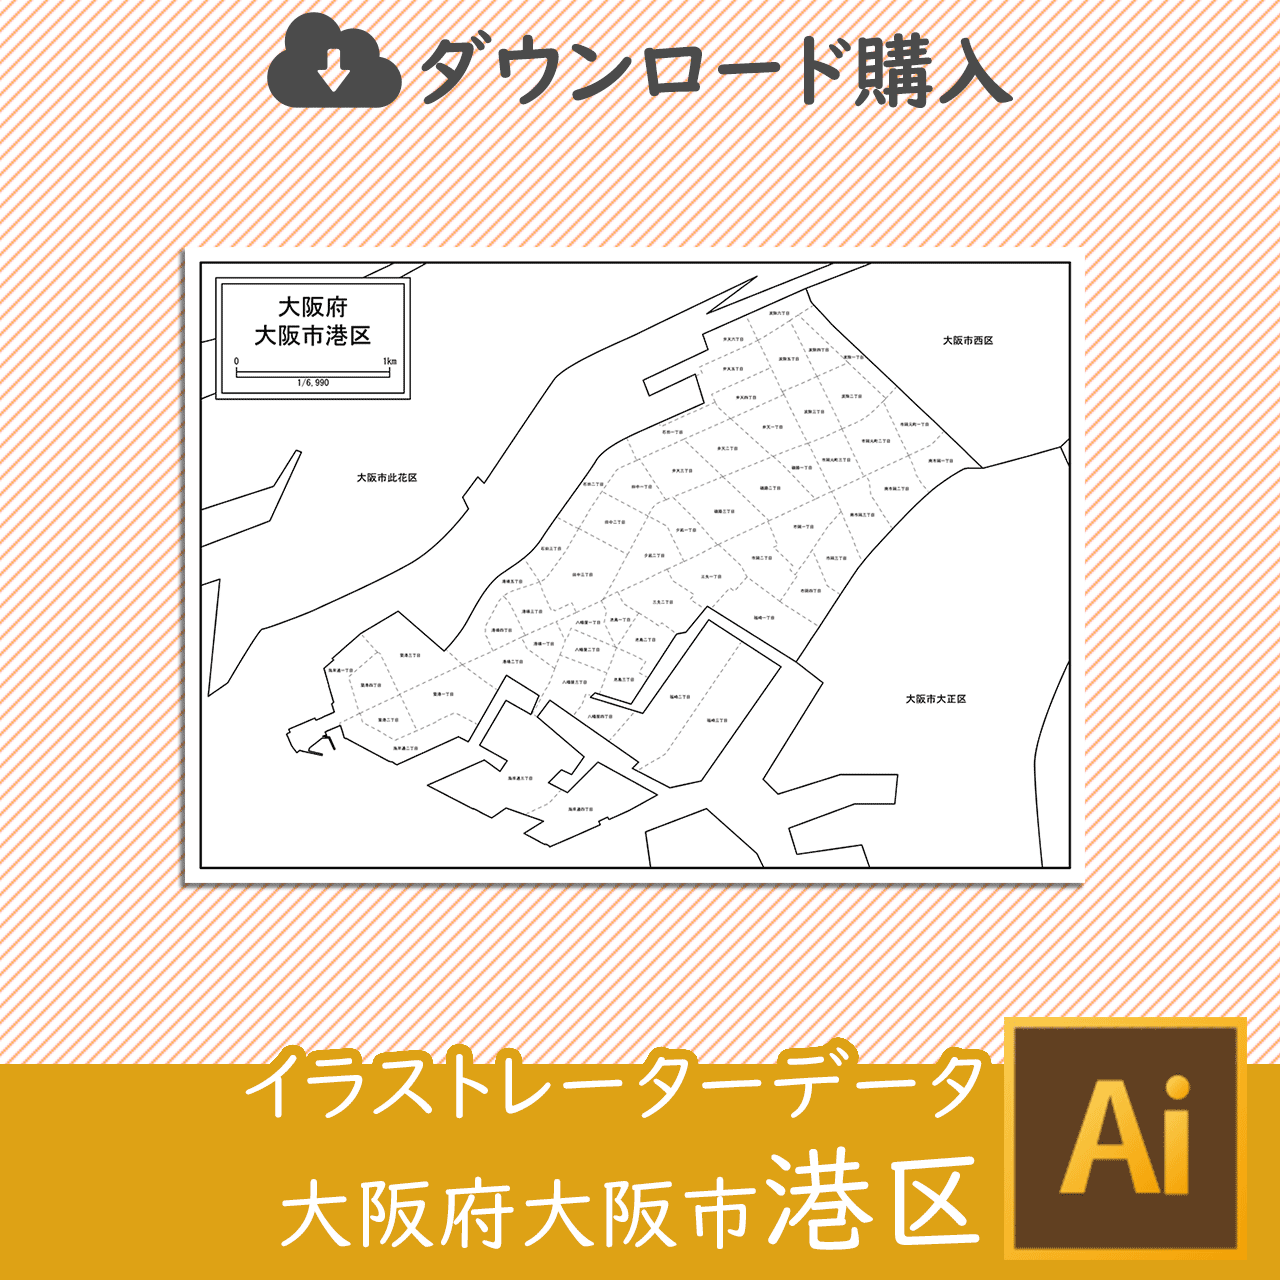 大阪市港区の白地図のサムネイル